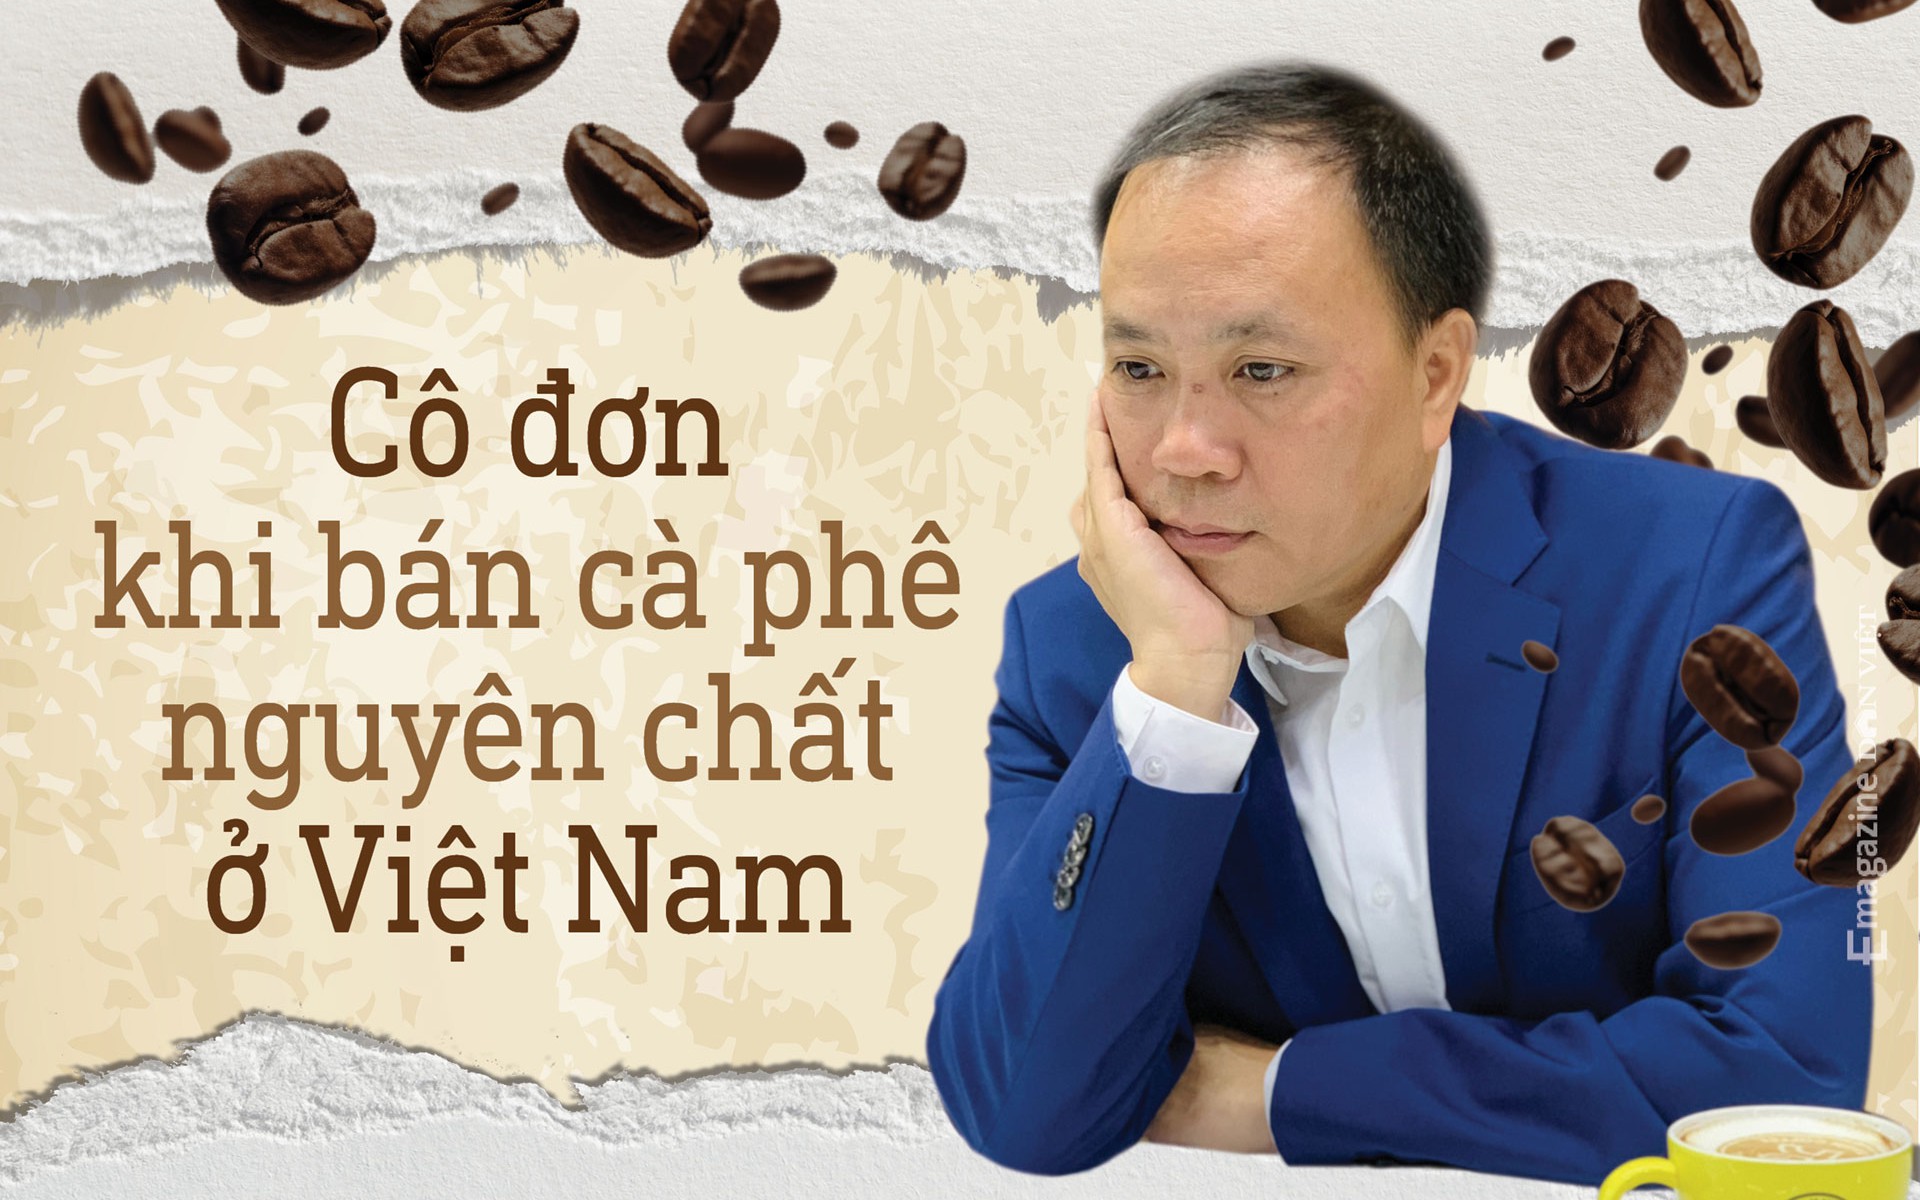 &quot;Vua tiêu&quot; Phan Minh Thông: Tôi cô đơn khi bán cà phê nguyên chất ở Việt Nam